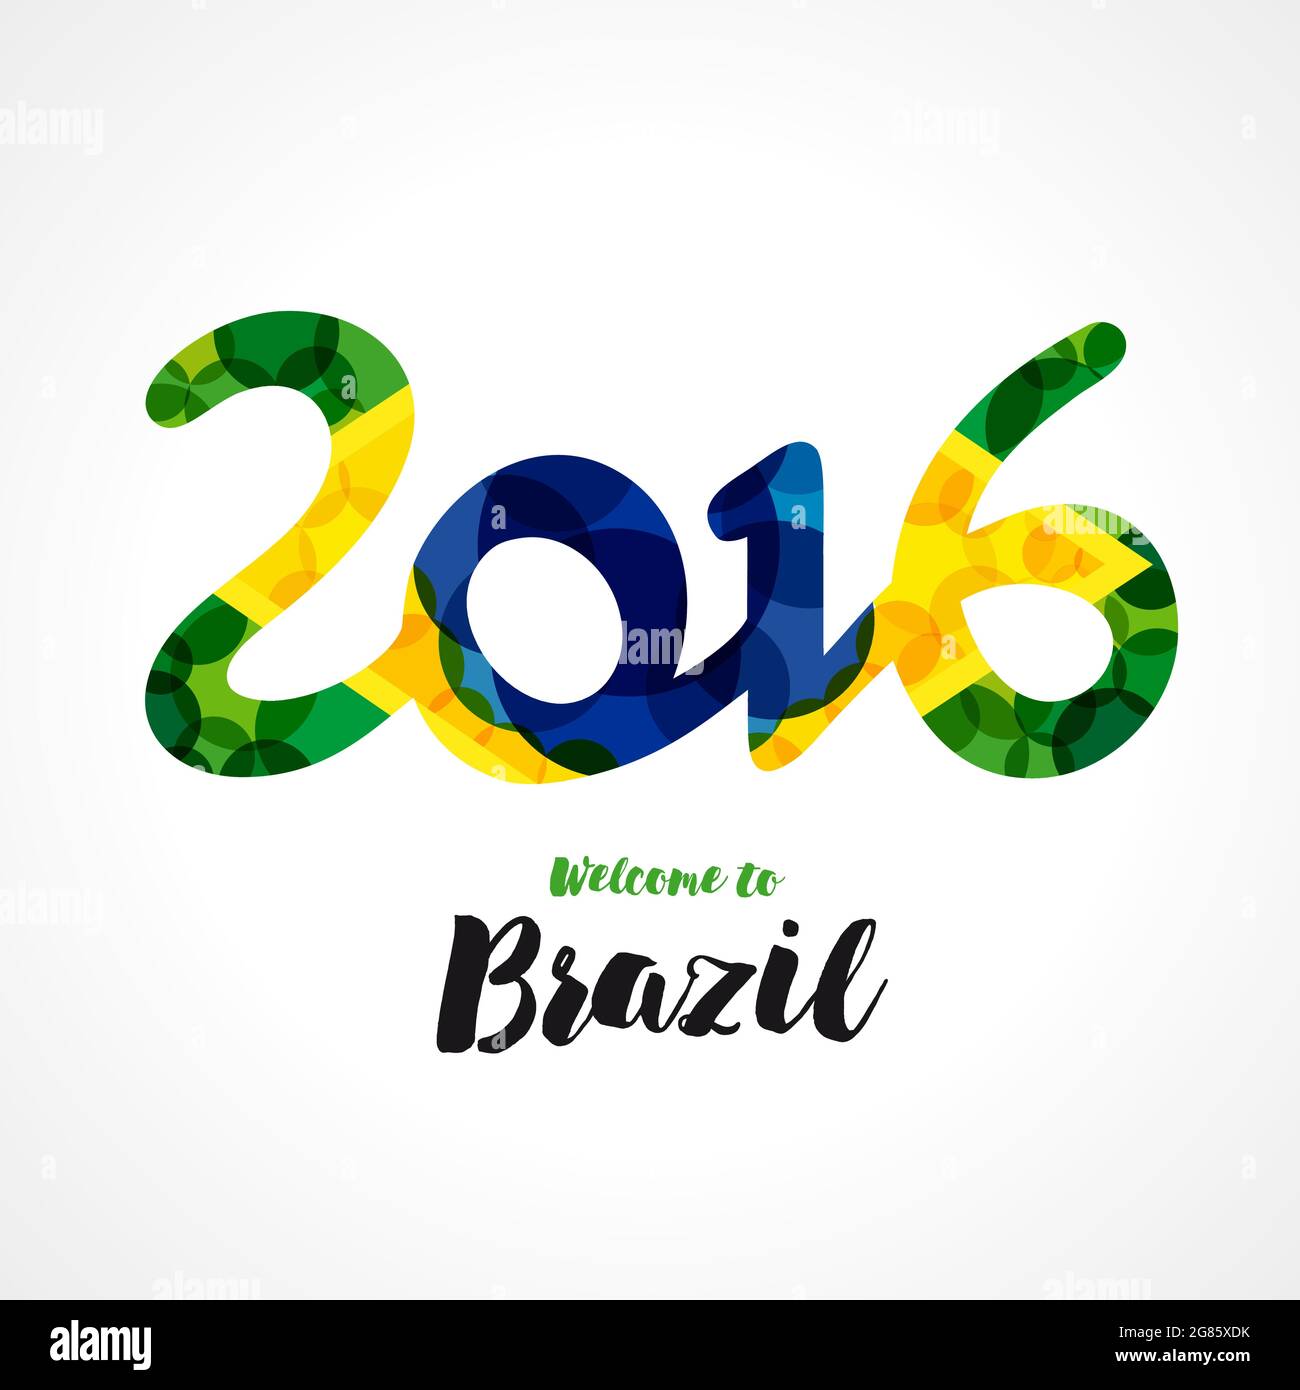 Willkommen bei Brasilien Coveridea. Brasilianische Flag-Elemente mit moderner Bubble-Textur. Kreatives Konzept mit nationalem Hintergrund. Isolierte abstrakte Grafik-Desi Stock Vektor